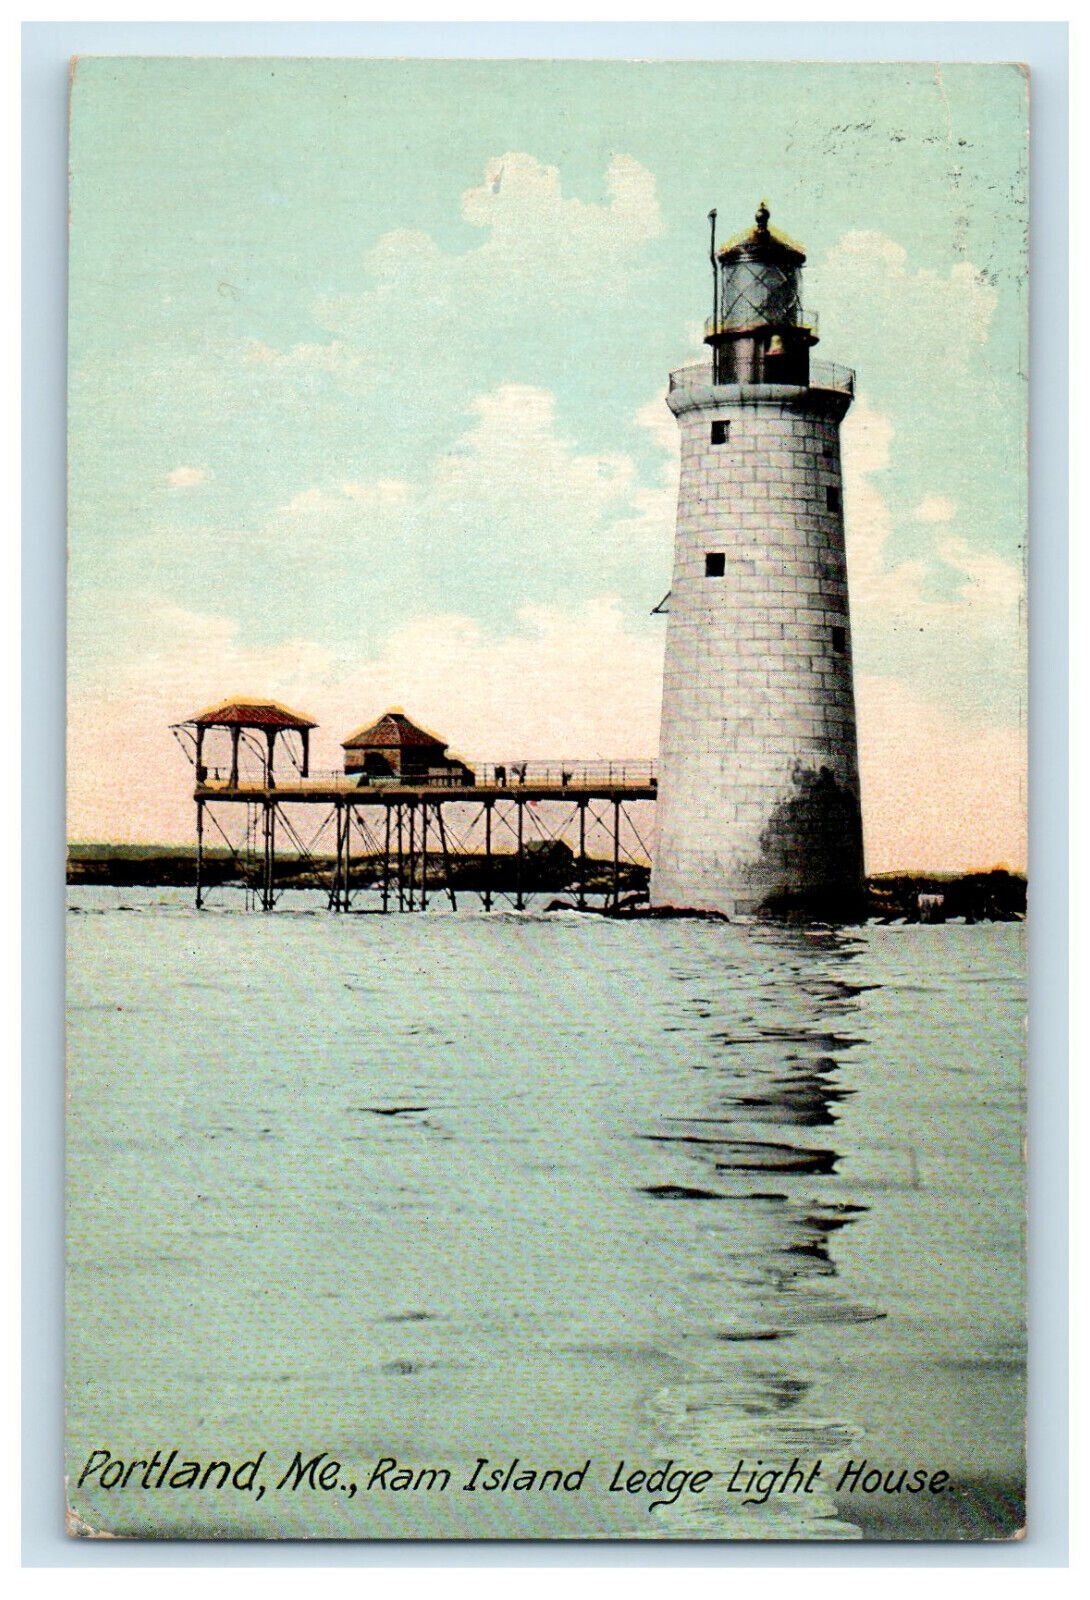 1911 Ram Island Ledge Light House, Portland ME Yarmouth ME Posted Postcard